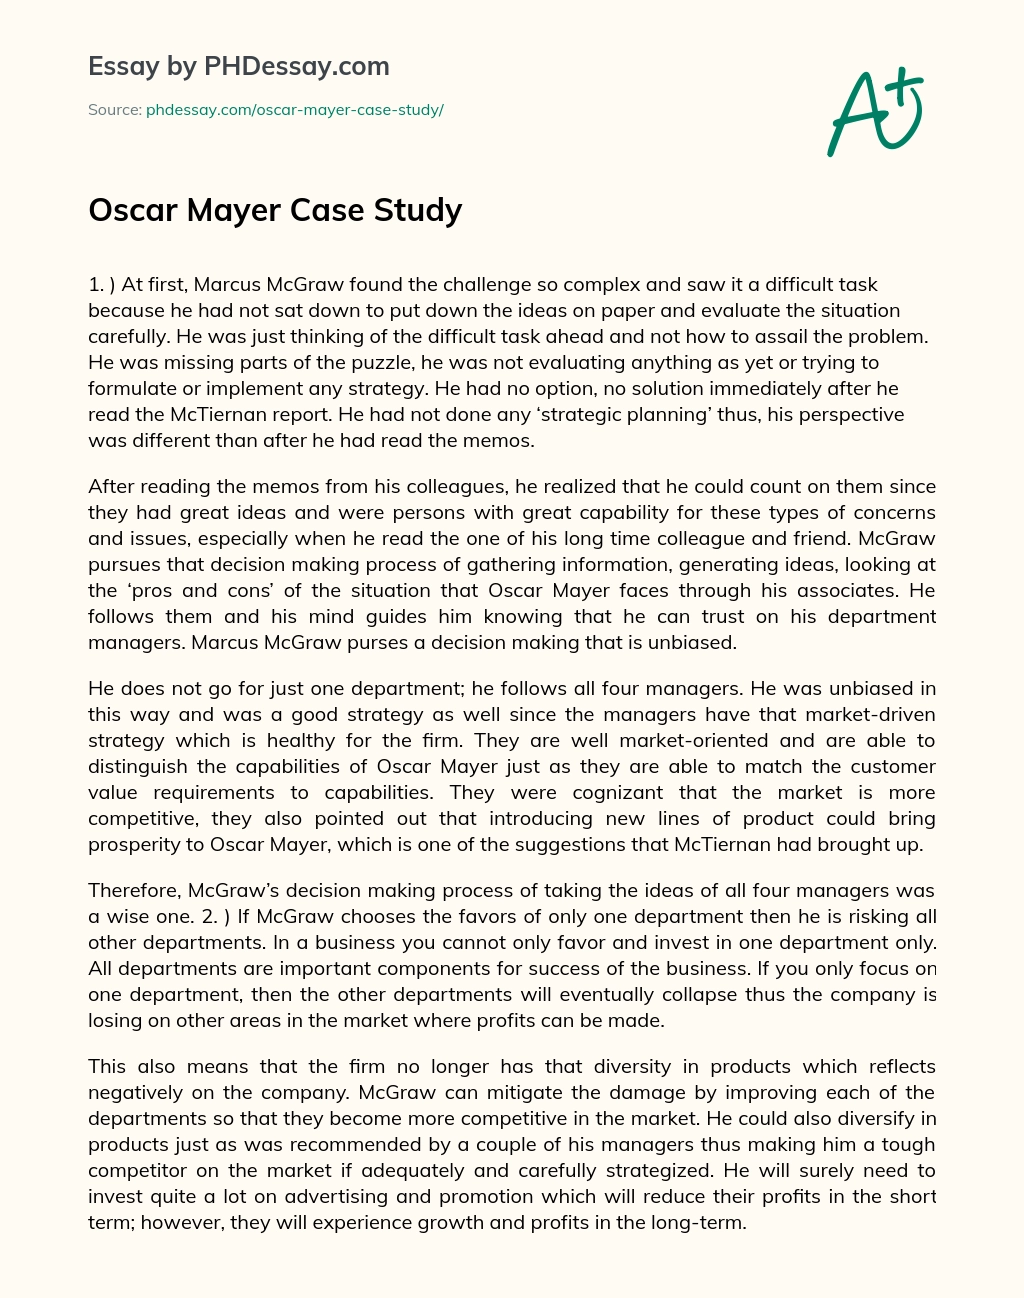 Oscar Mayer Case Study essay